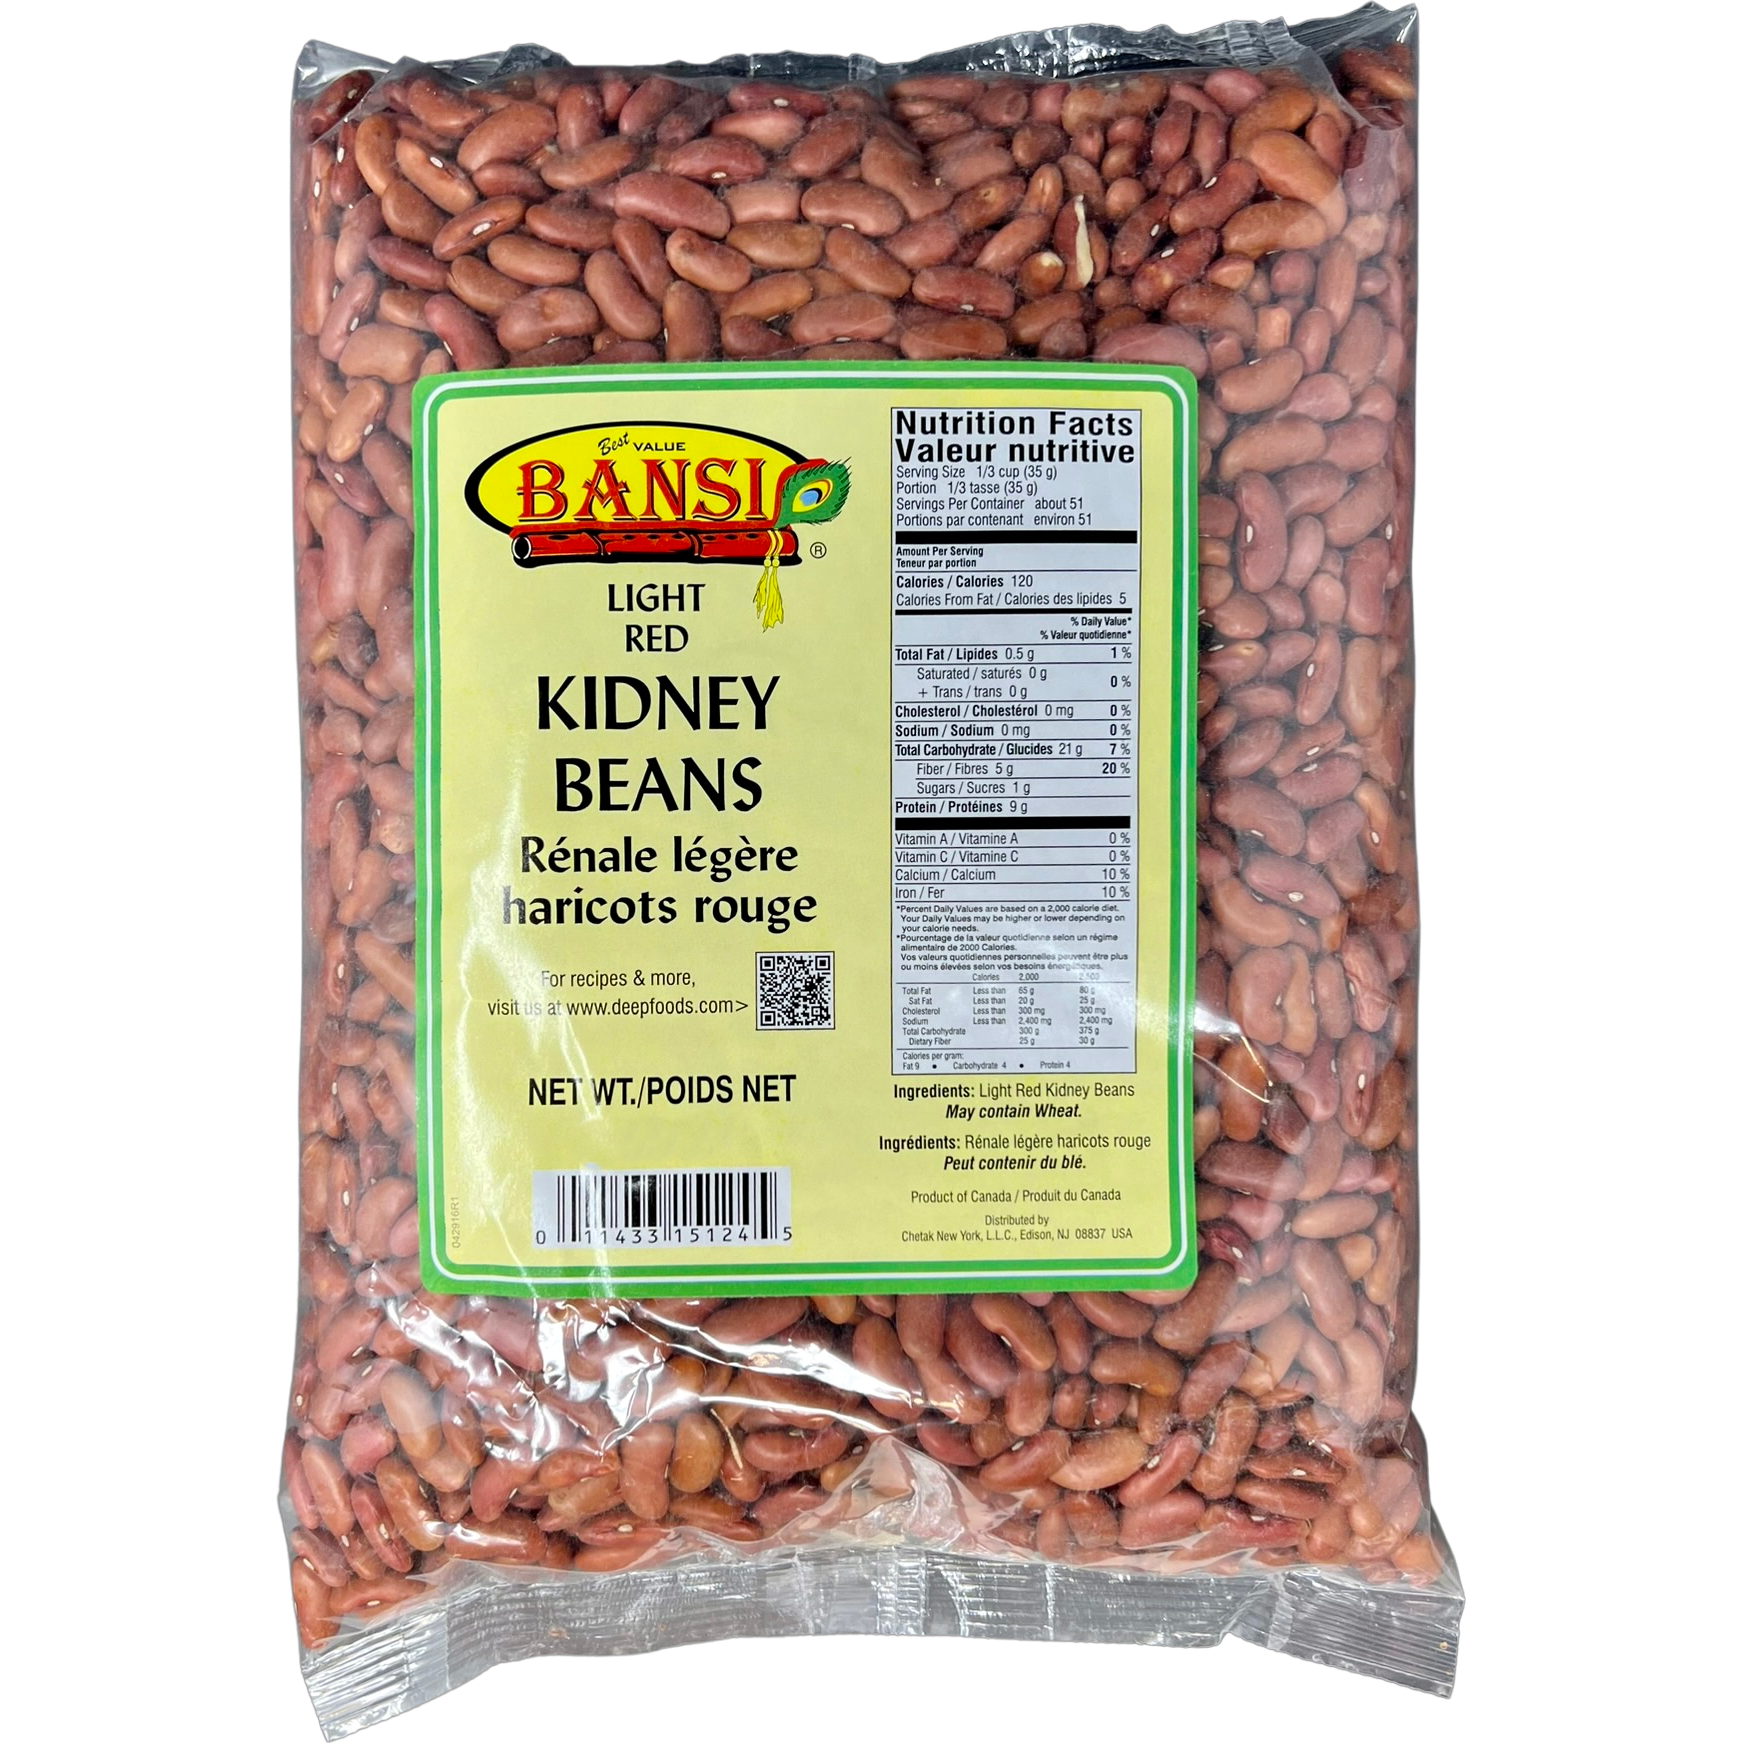 Bansi Light red Kidney Beans - 907 Gm (2 Lb)